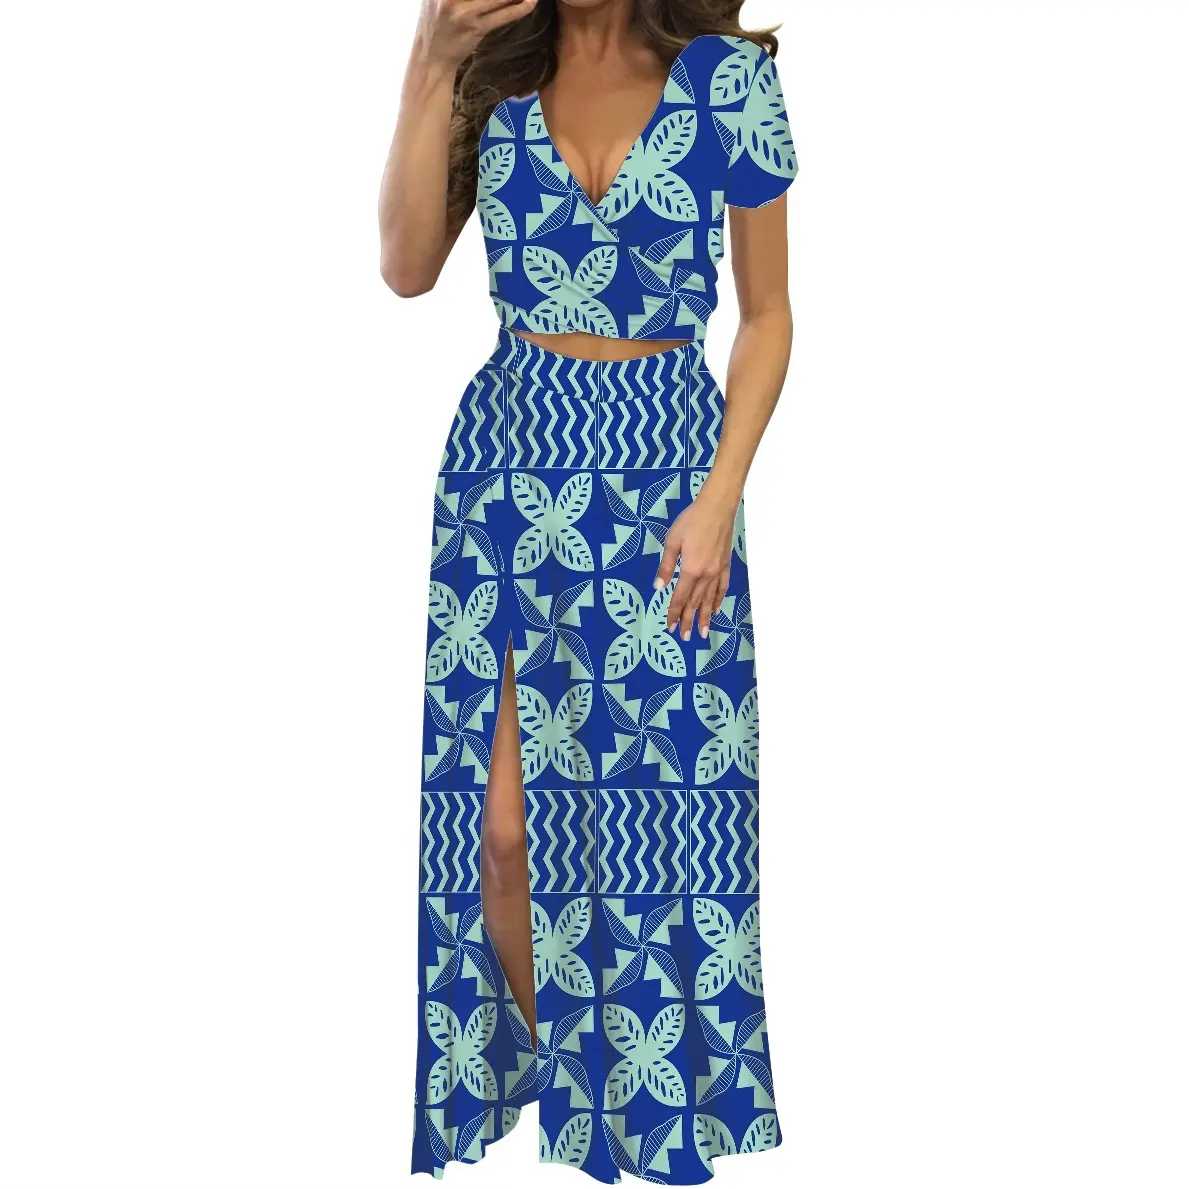 Trang Phục Nữ Polynesia Theo Yêu Cầu Váy Ngoại Cỡ Váy SAMOA Thiết Kế Mới ĐẦM DỰ TIỆC Đảo Nữ Gợi Cảm